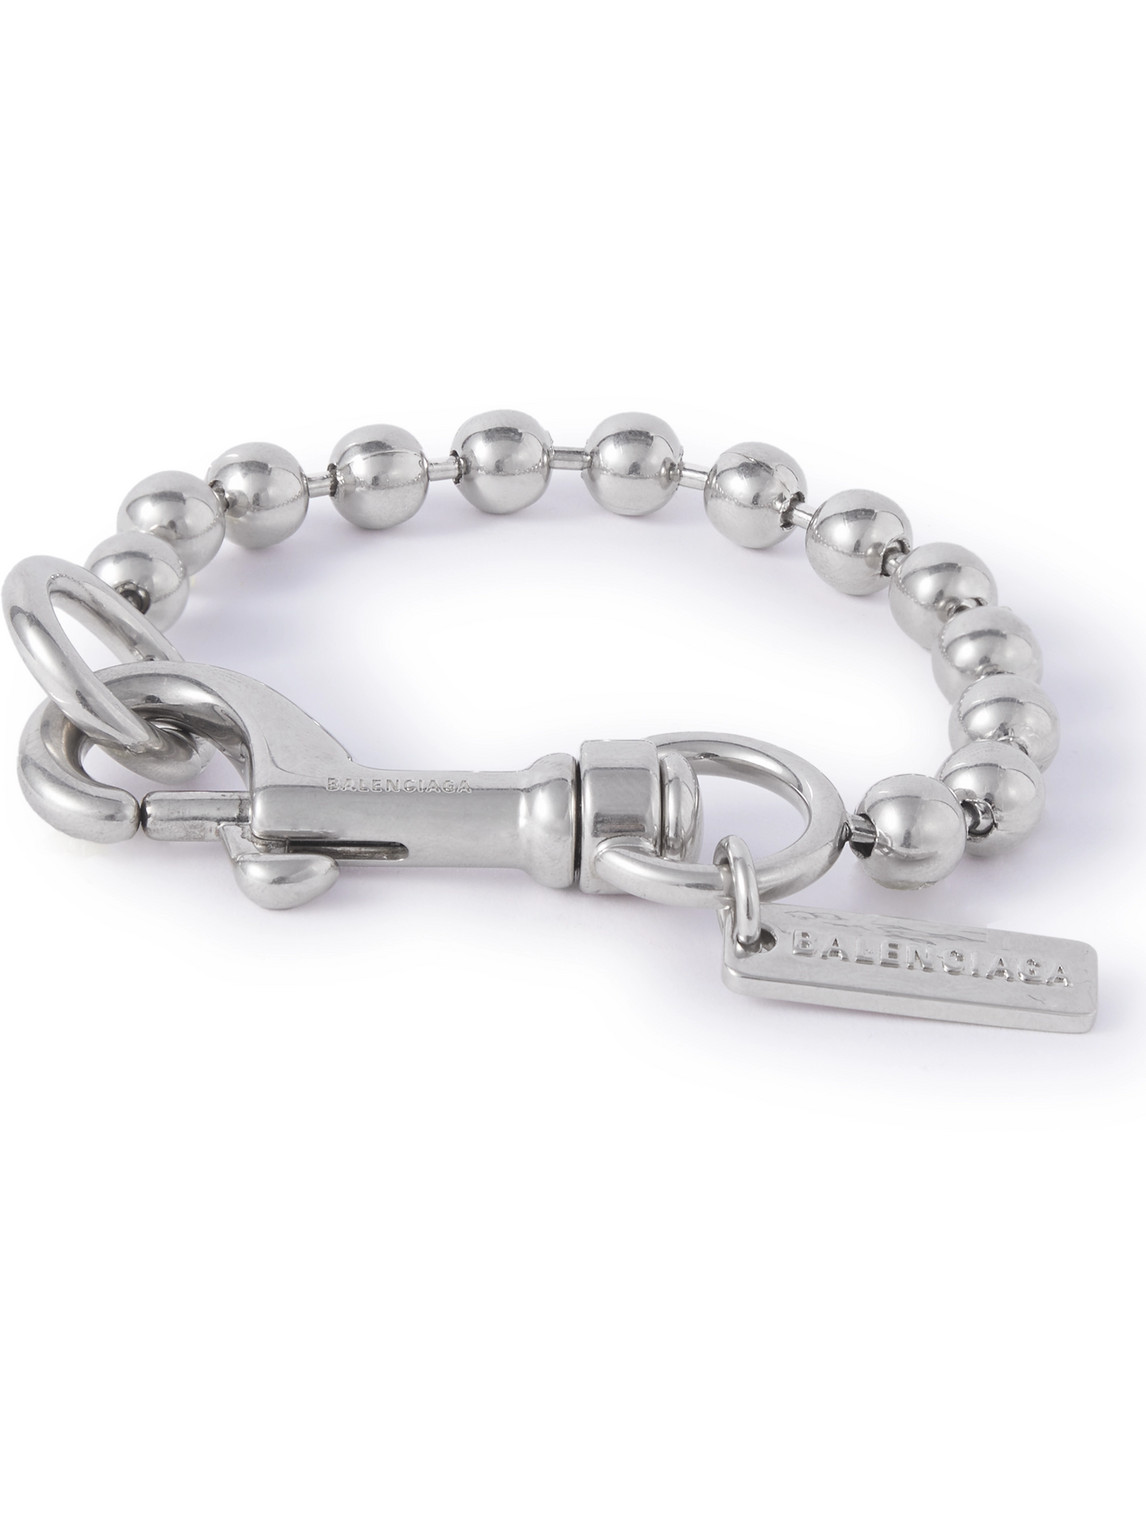 Balenciaga Skate Silver-tone Bracelet